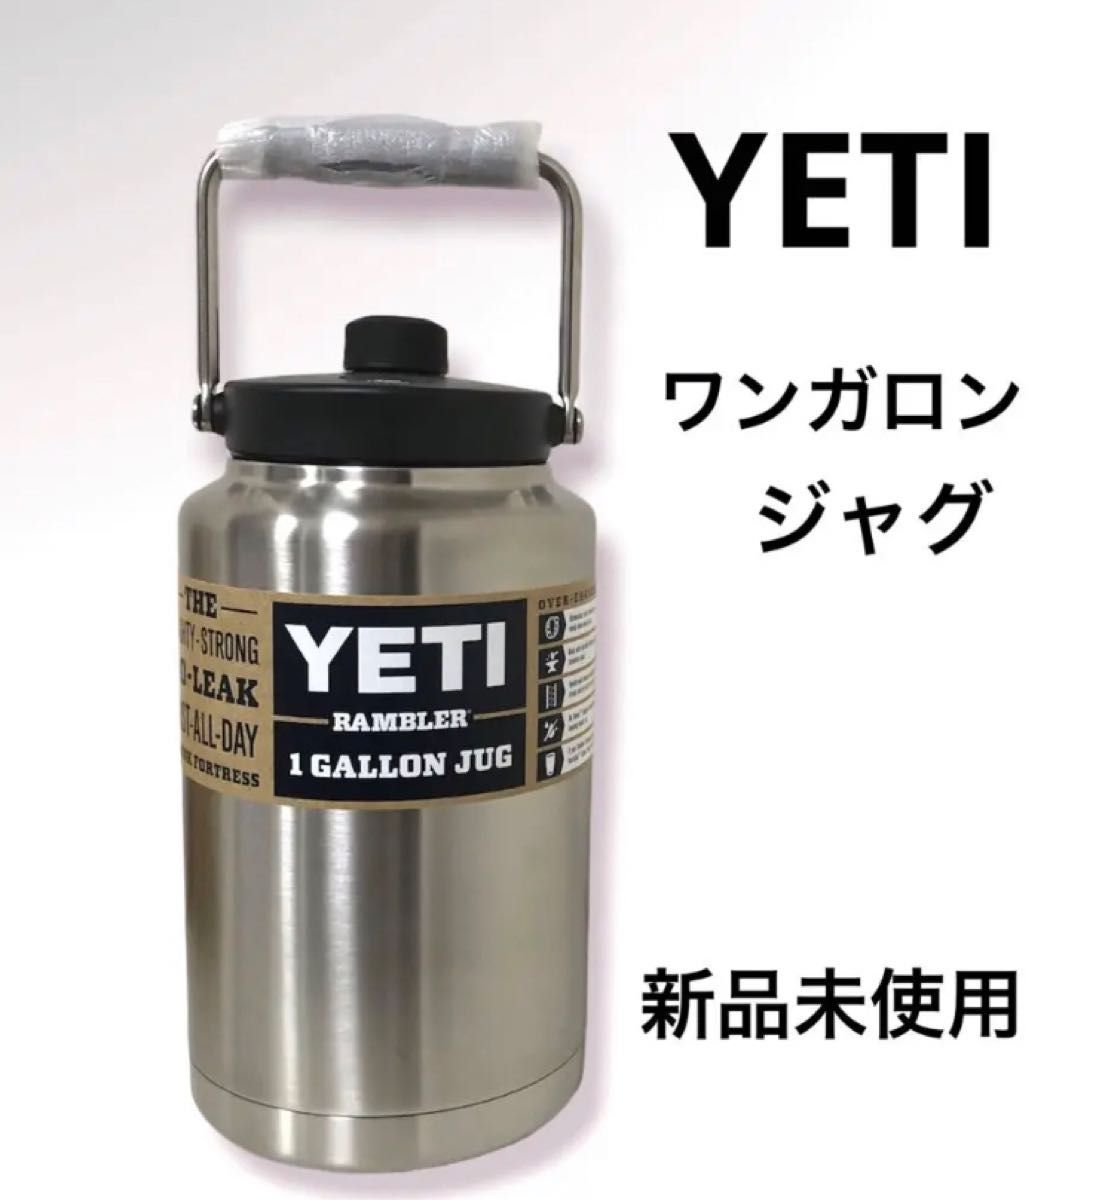 日本産 YETI Rambler イエティ ランブラー ワンガロンジャグ wchra.net